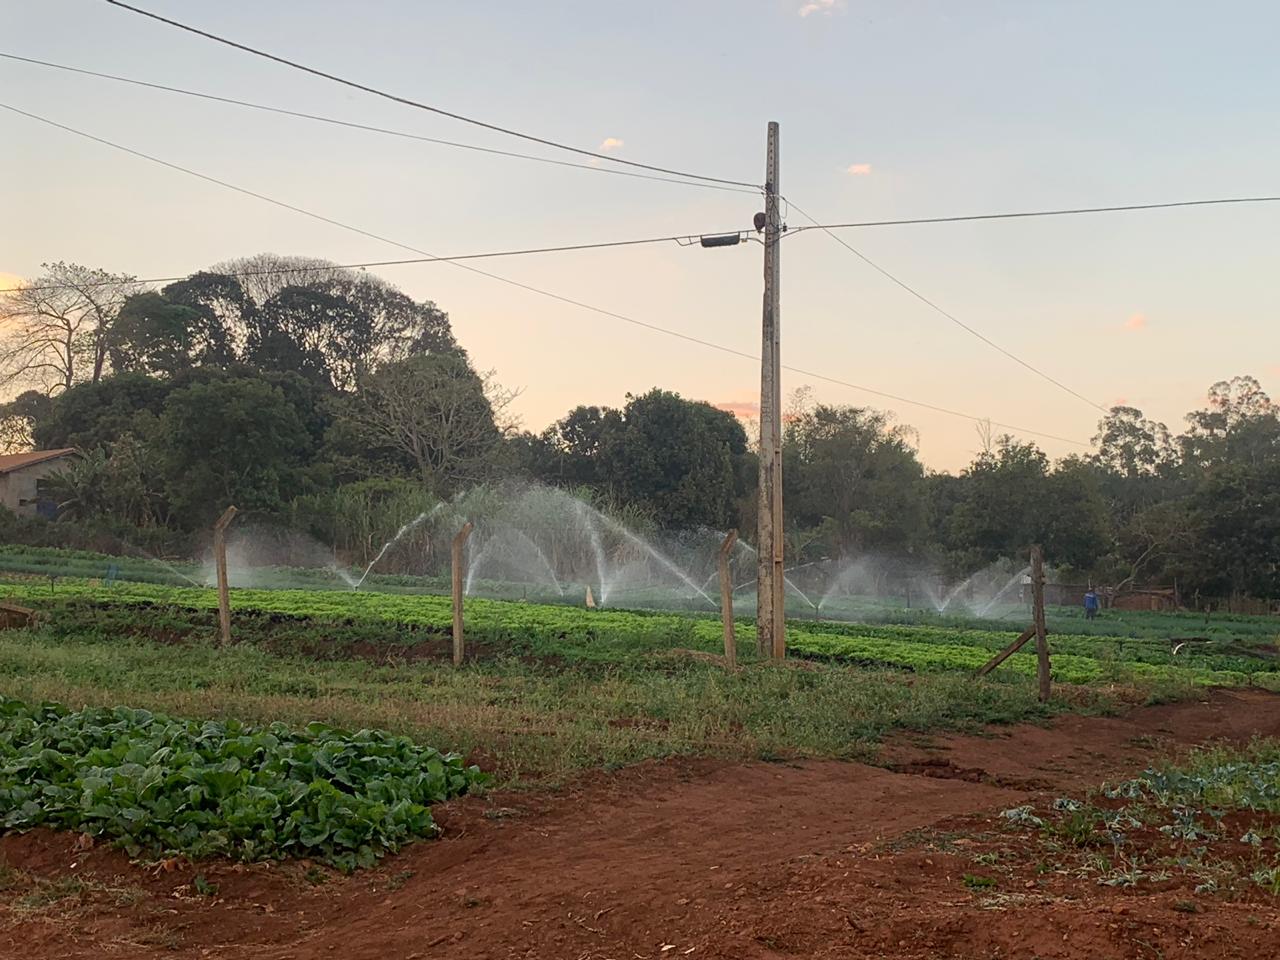 Estado faz apelo para que outorga de irrigação seja respeitada